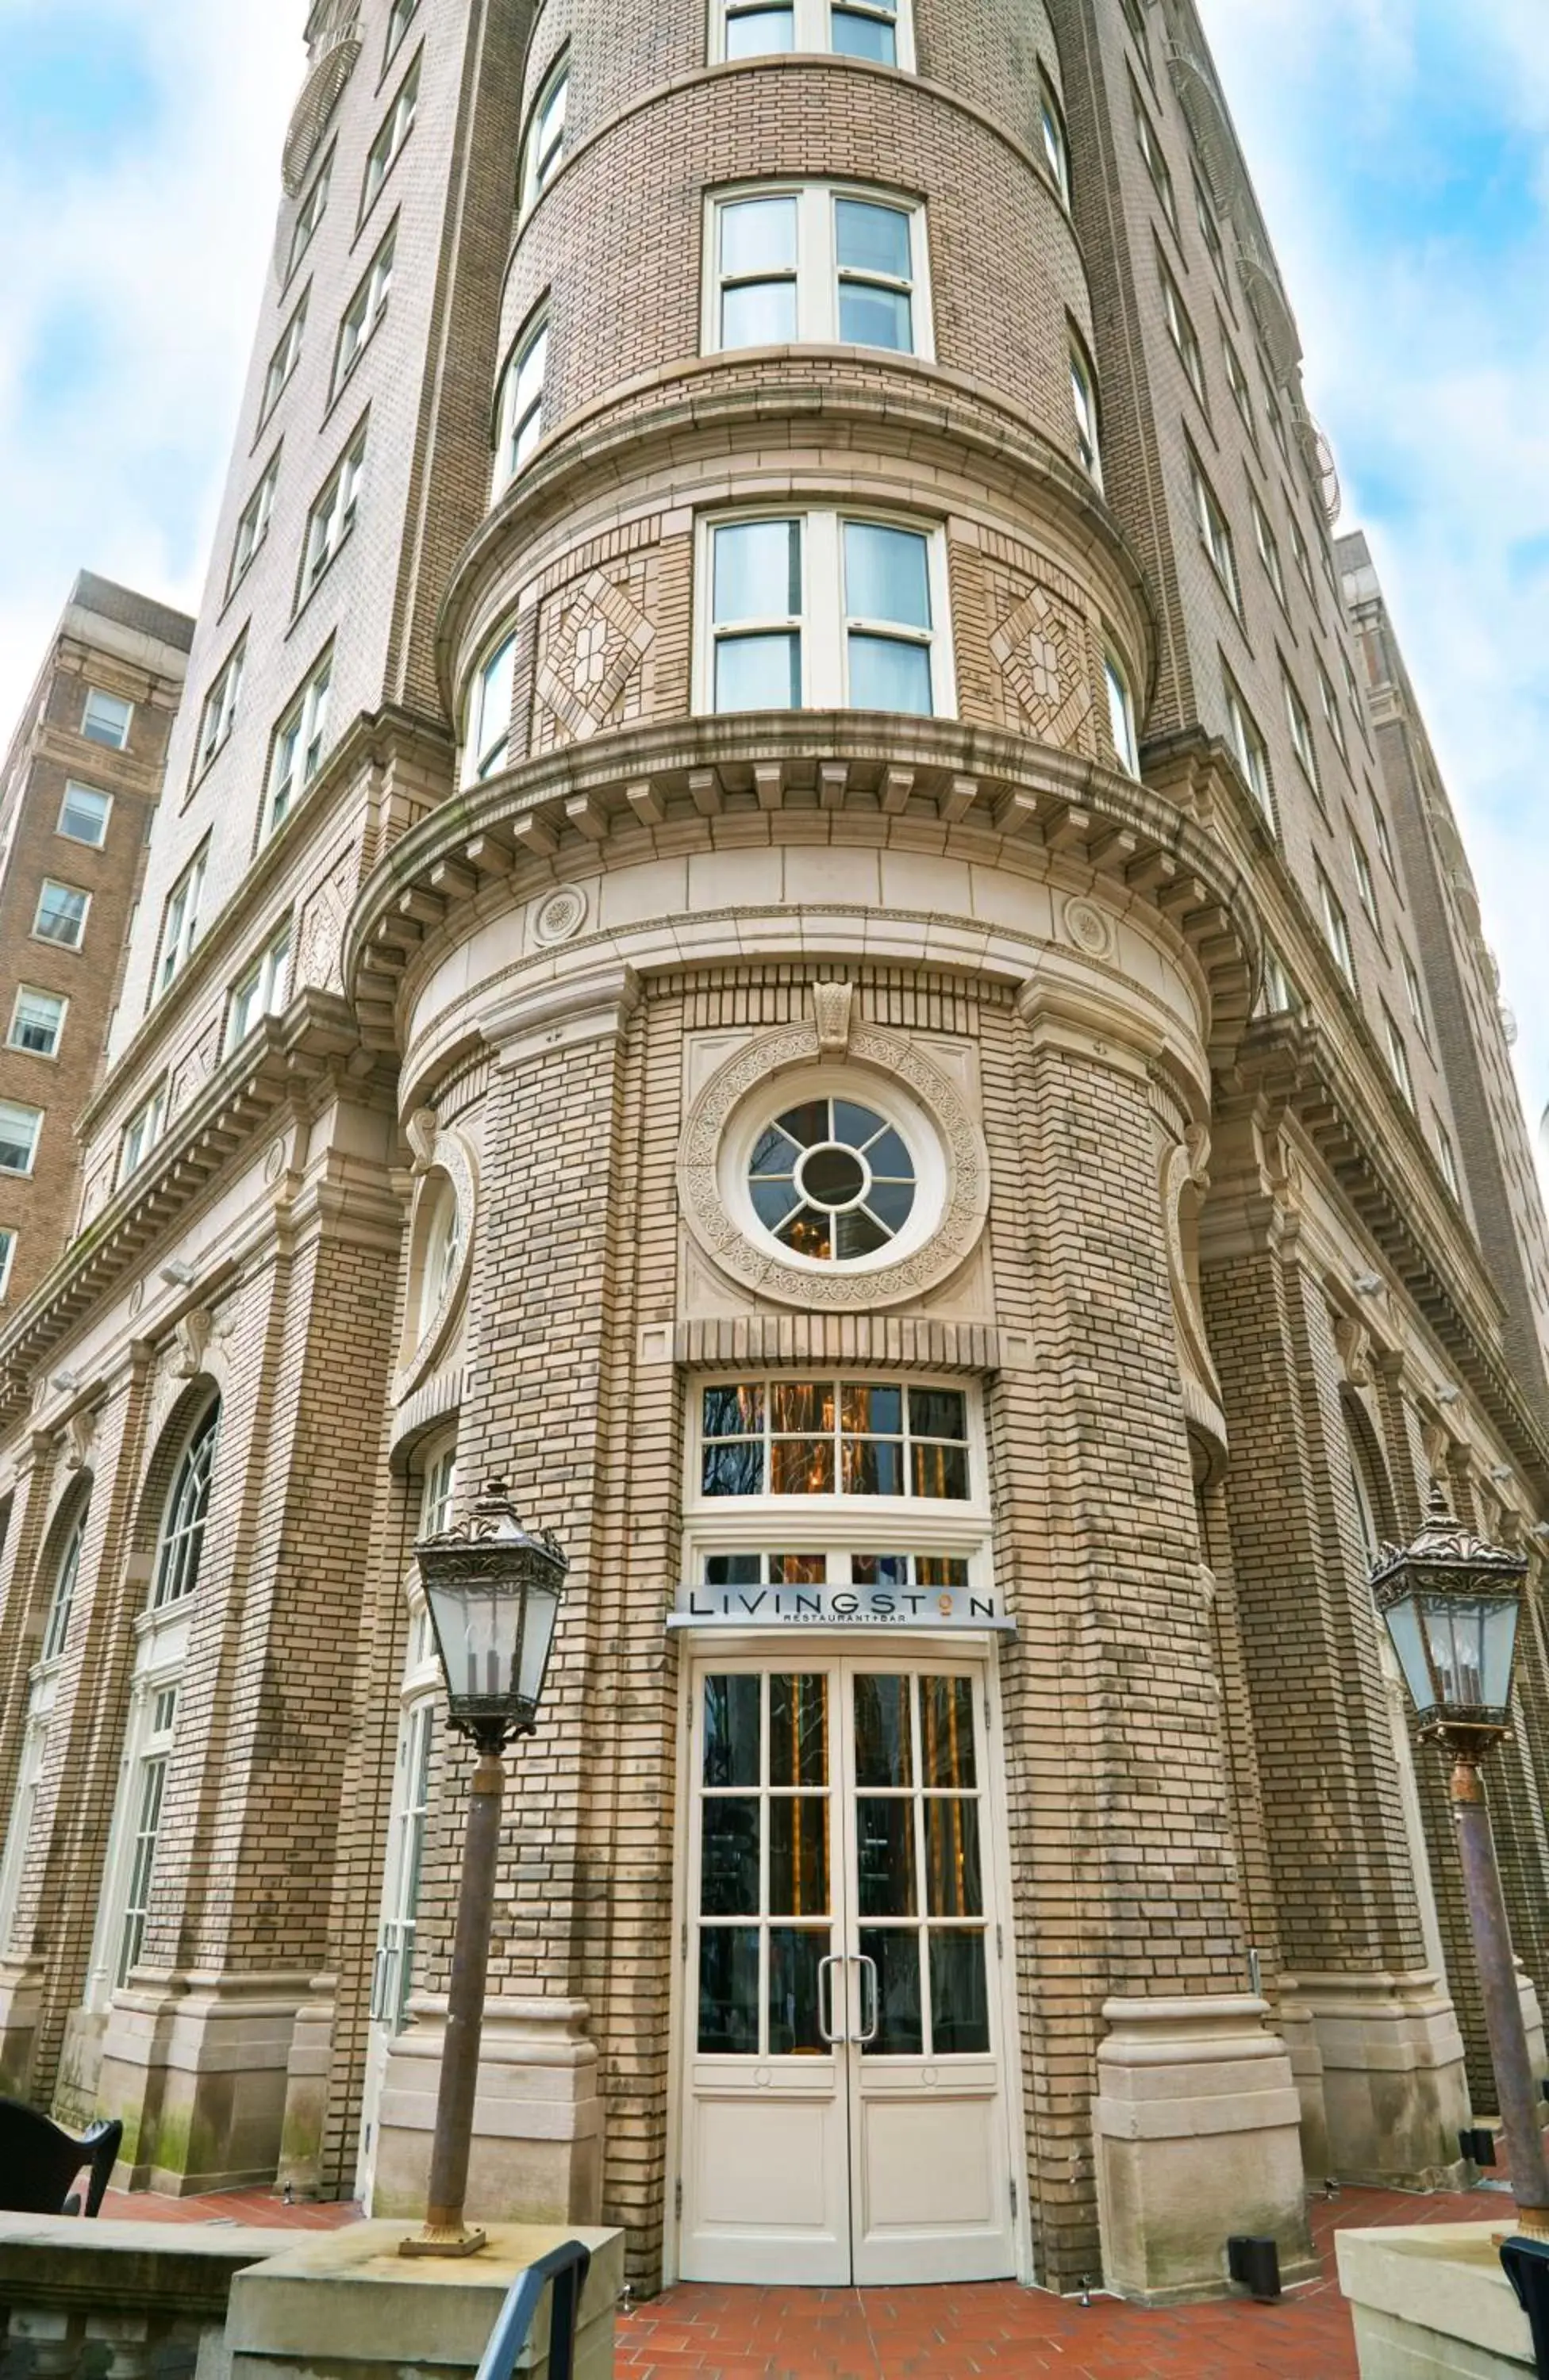 Property building, Facade/Entrance in The Georgian Terrace